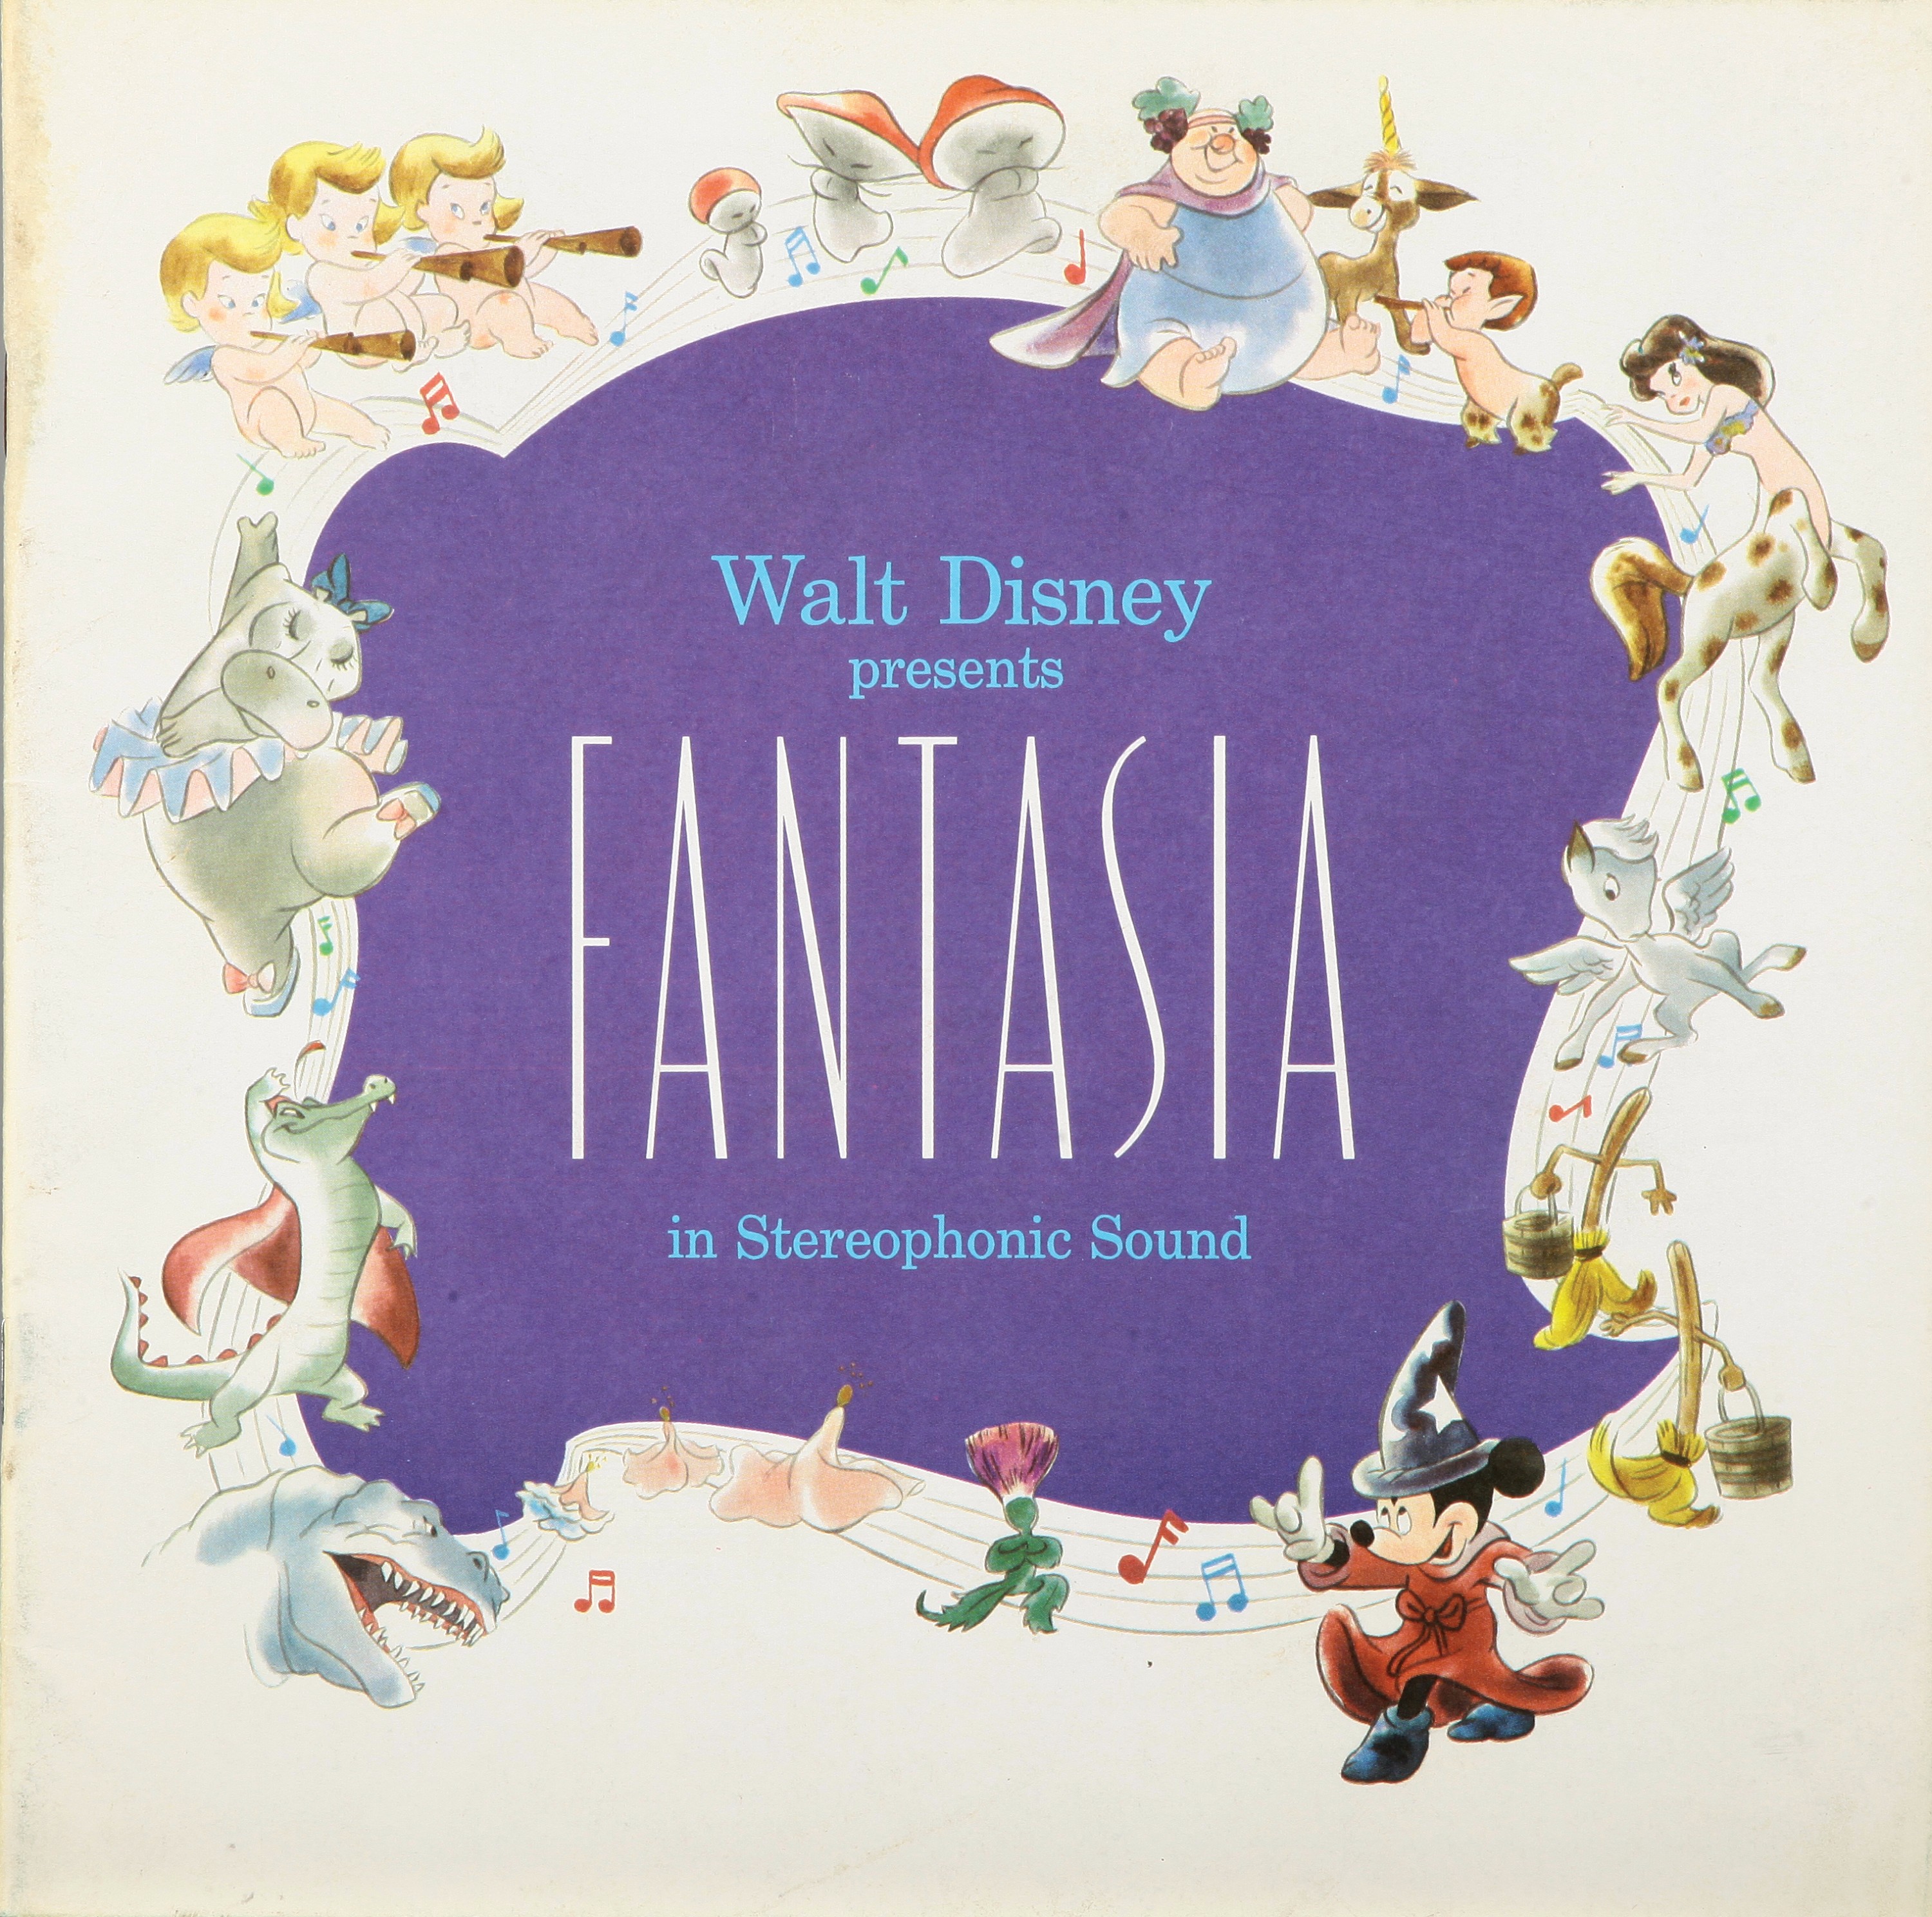 La copertina dell’album “Fantasia”, che contiene la colonna sonora dell’omonimo film